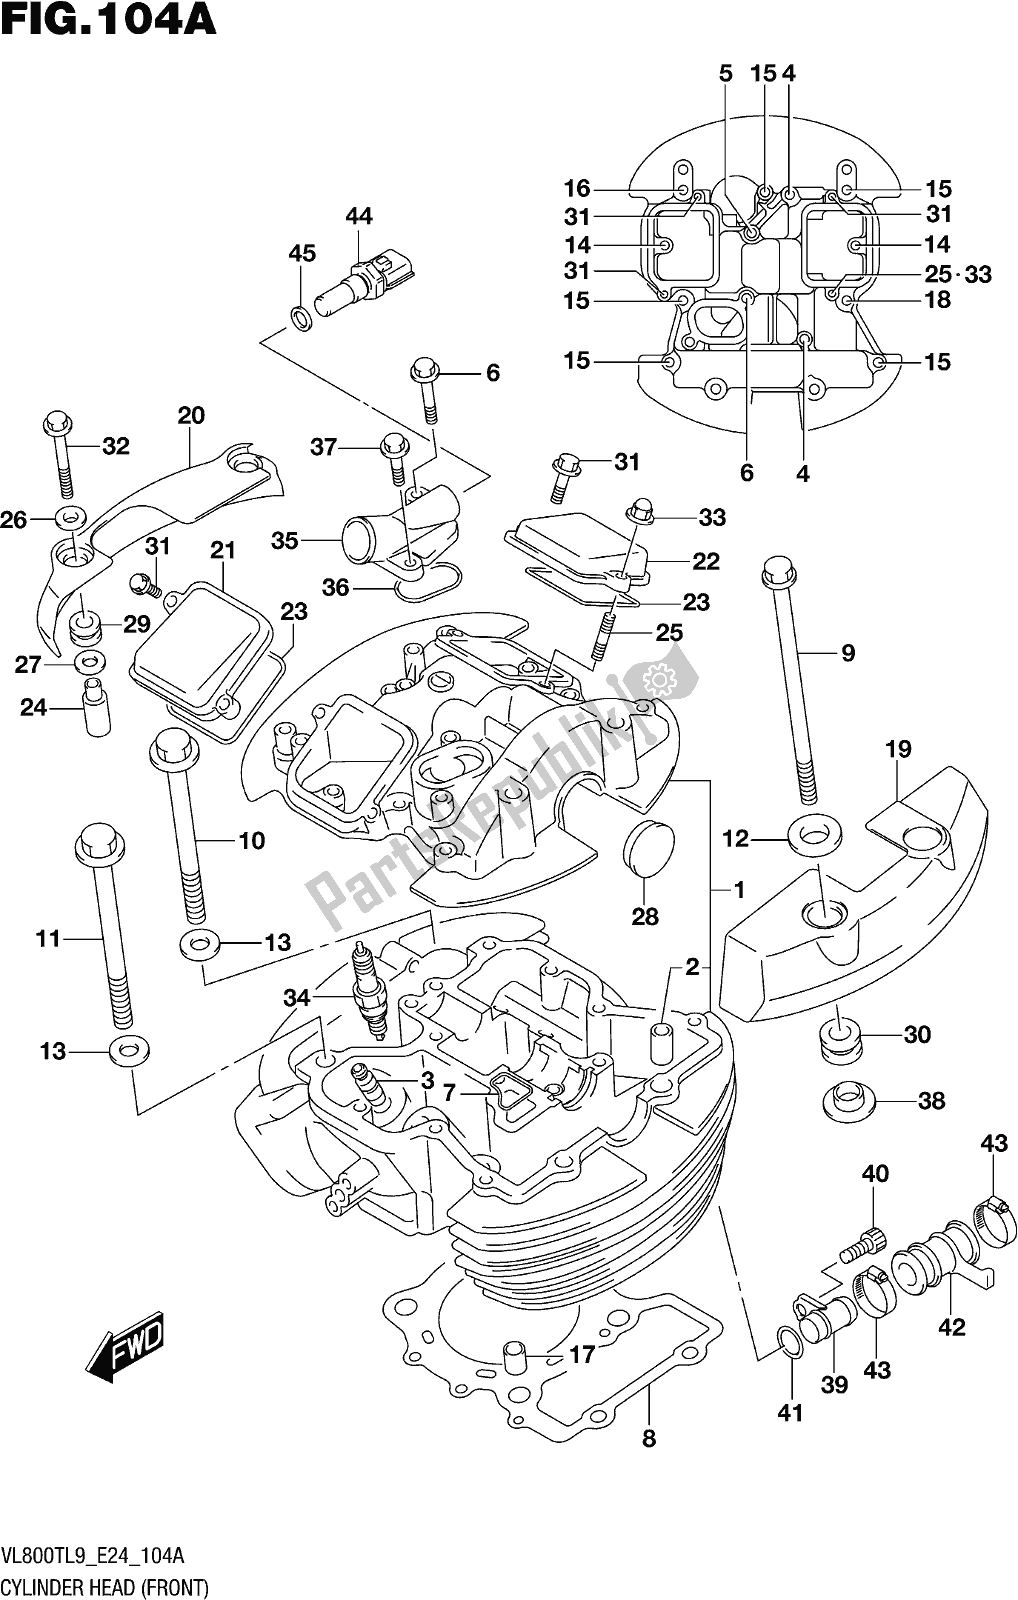 Todas las partes para Fig. 104a Cylinder Head (front) de Suzuki VL 800T 2019